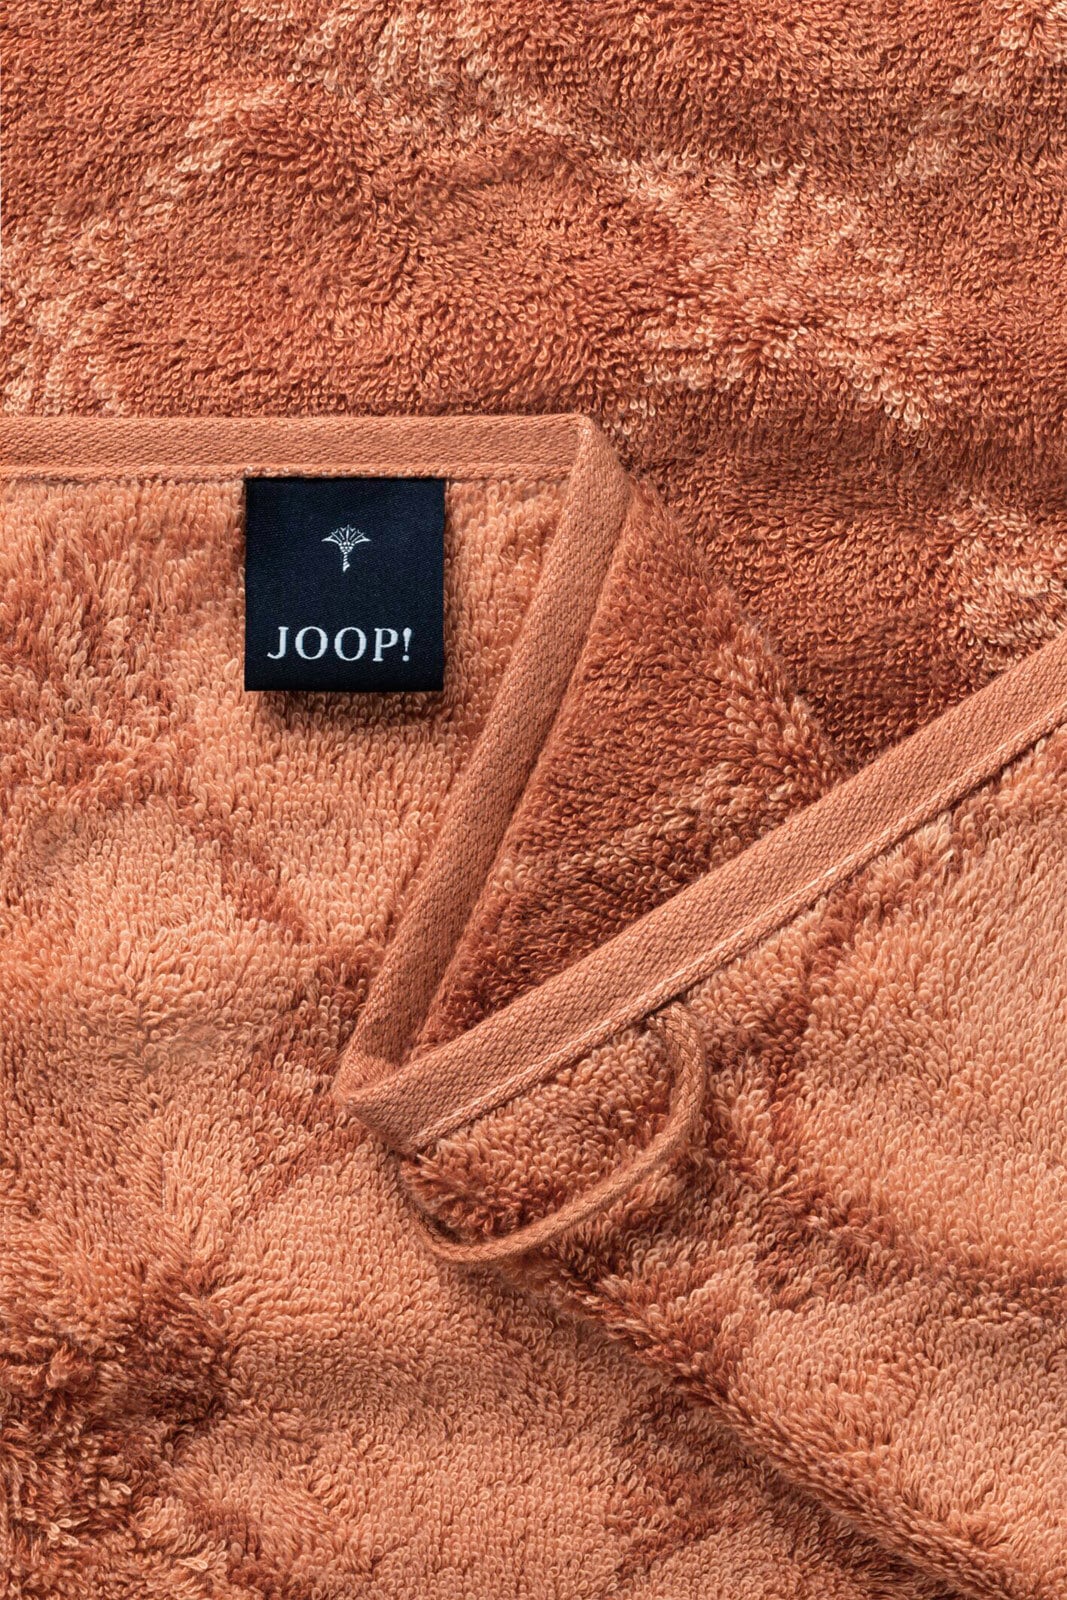 JOOP! Handtuch CLASSIC CORNFLOWER I 50 x 100 cm kupferfarbig 